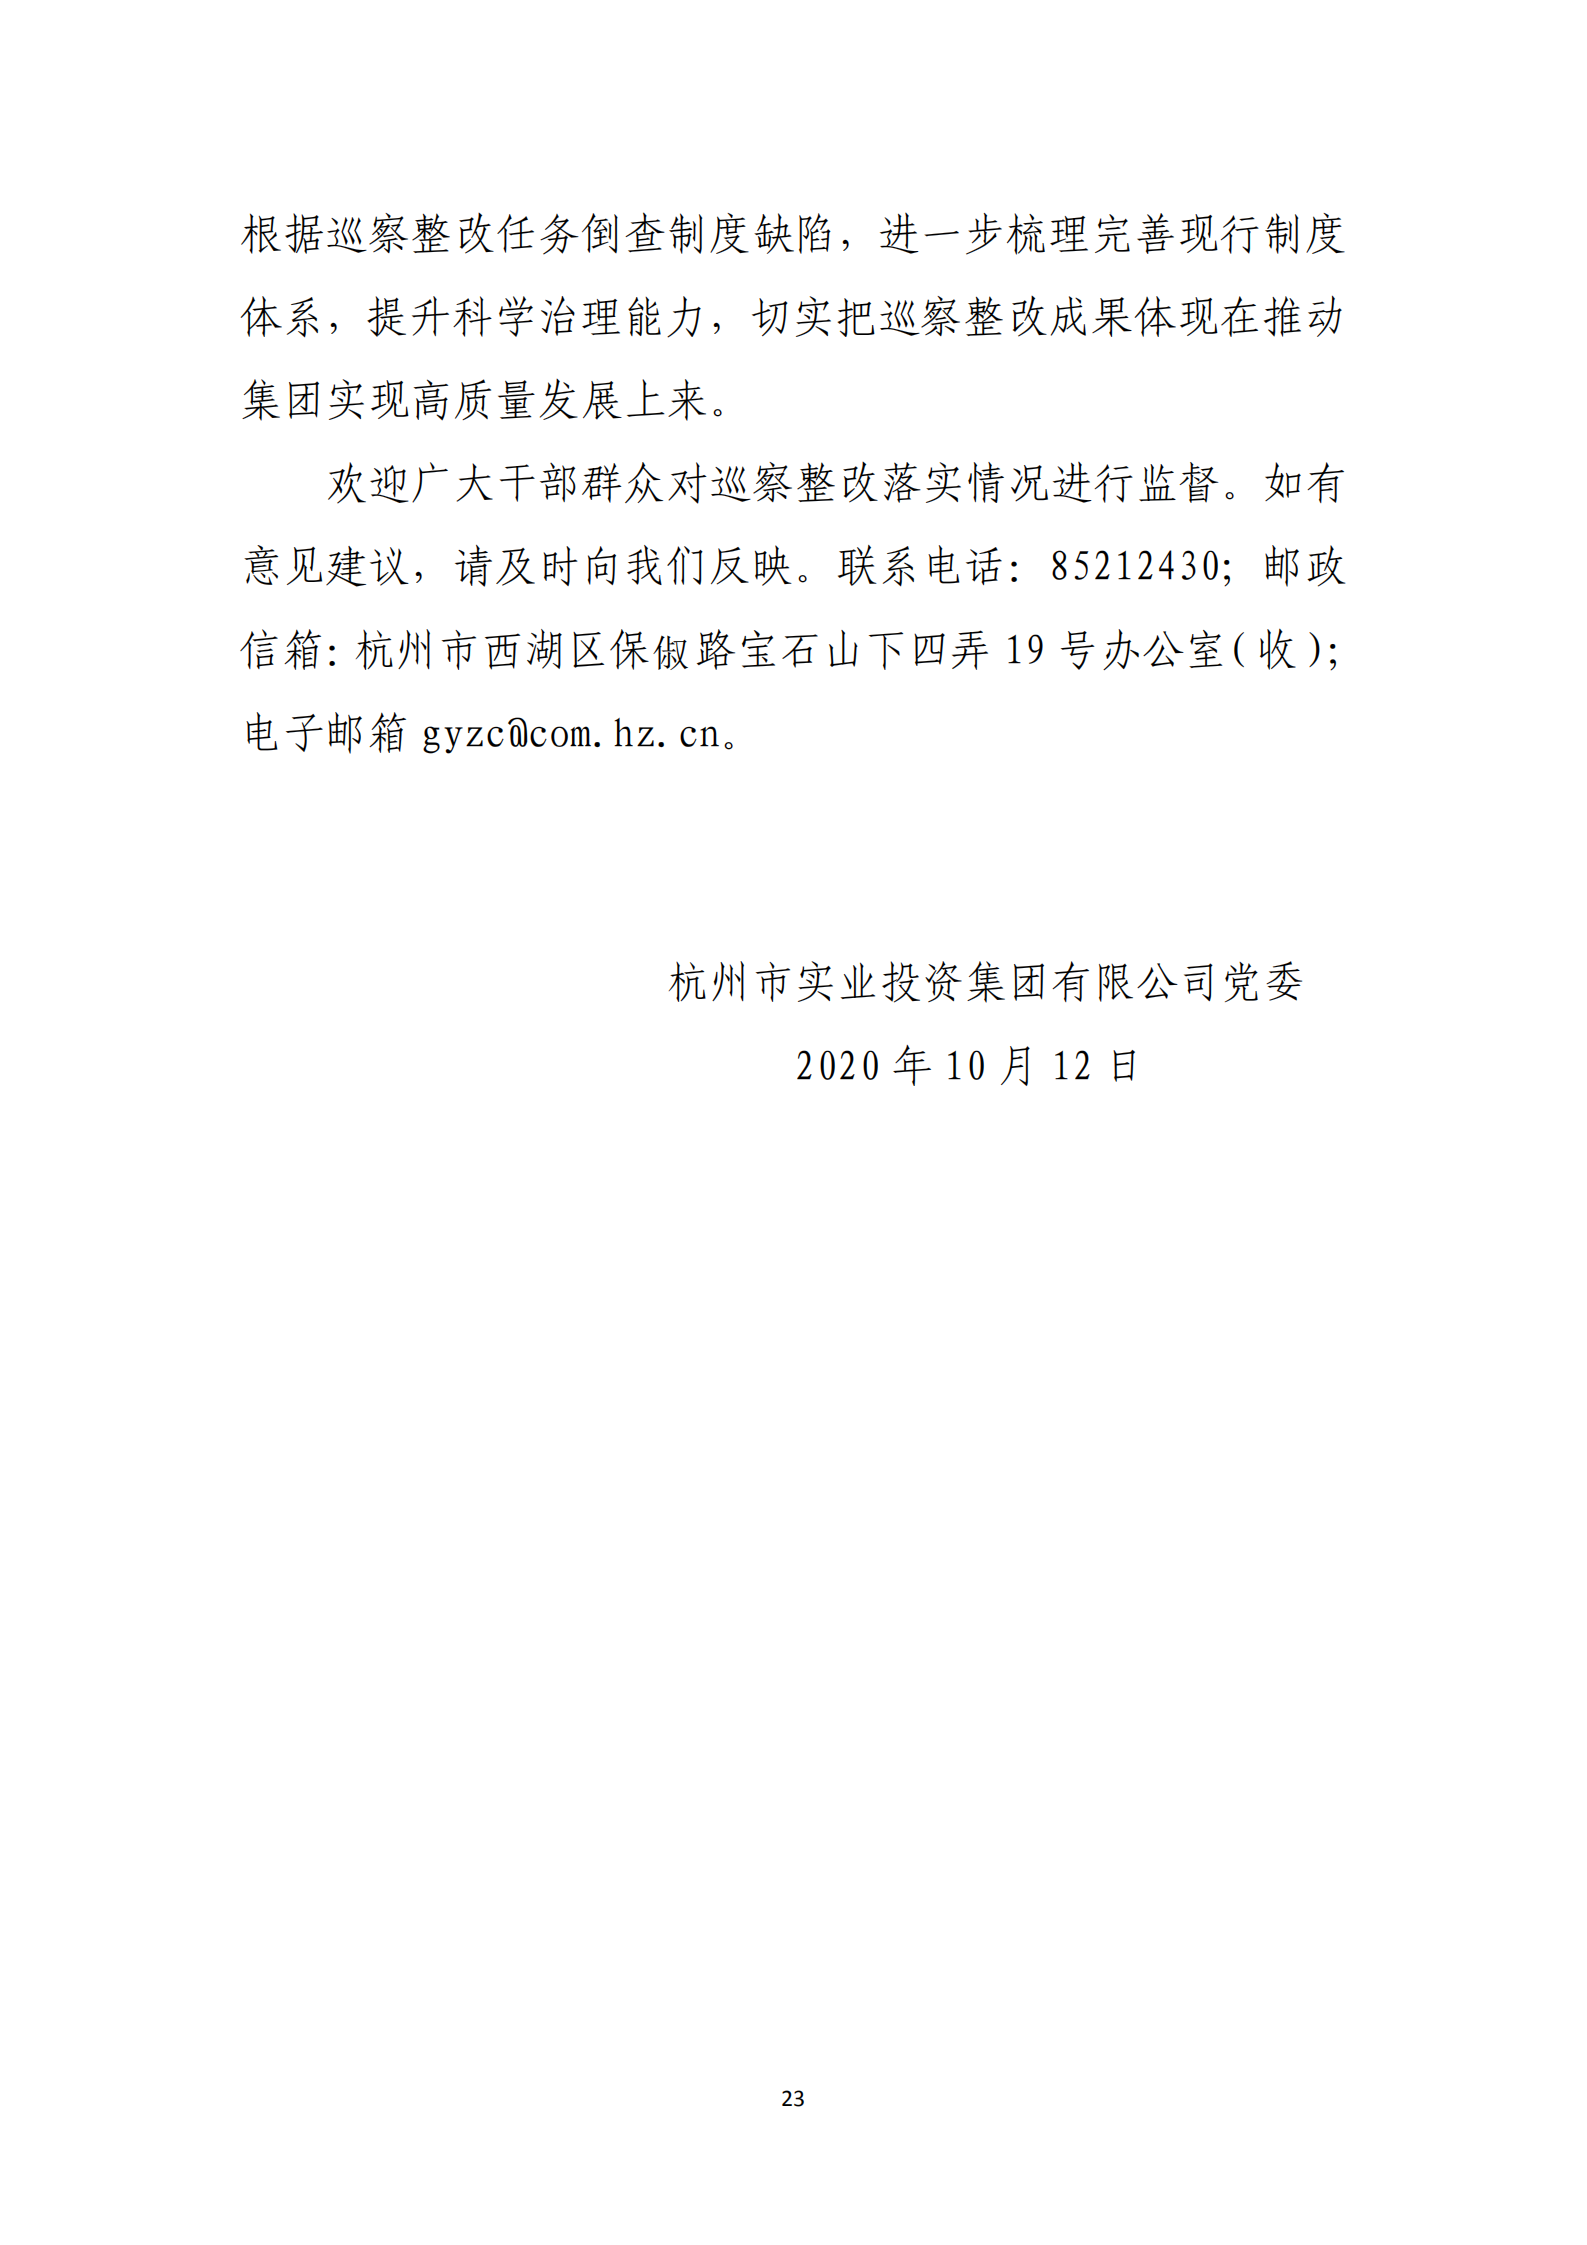 大阳城集团娱乐游戏党委关于巡察整改情况的通报_22.png